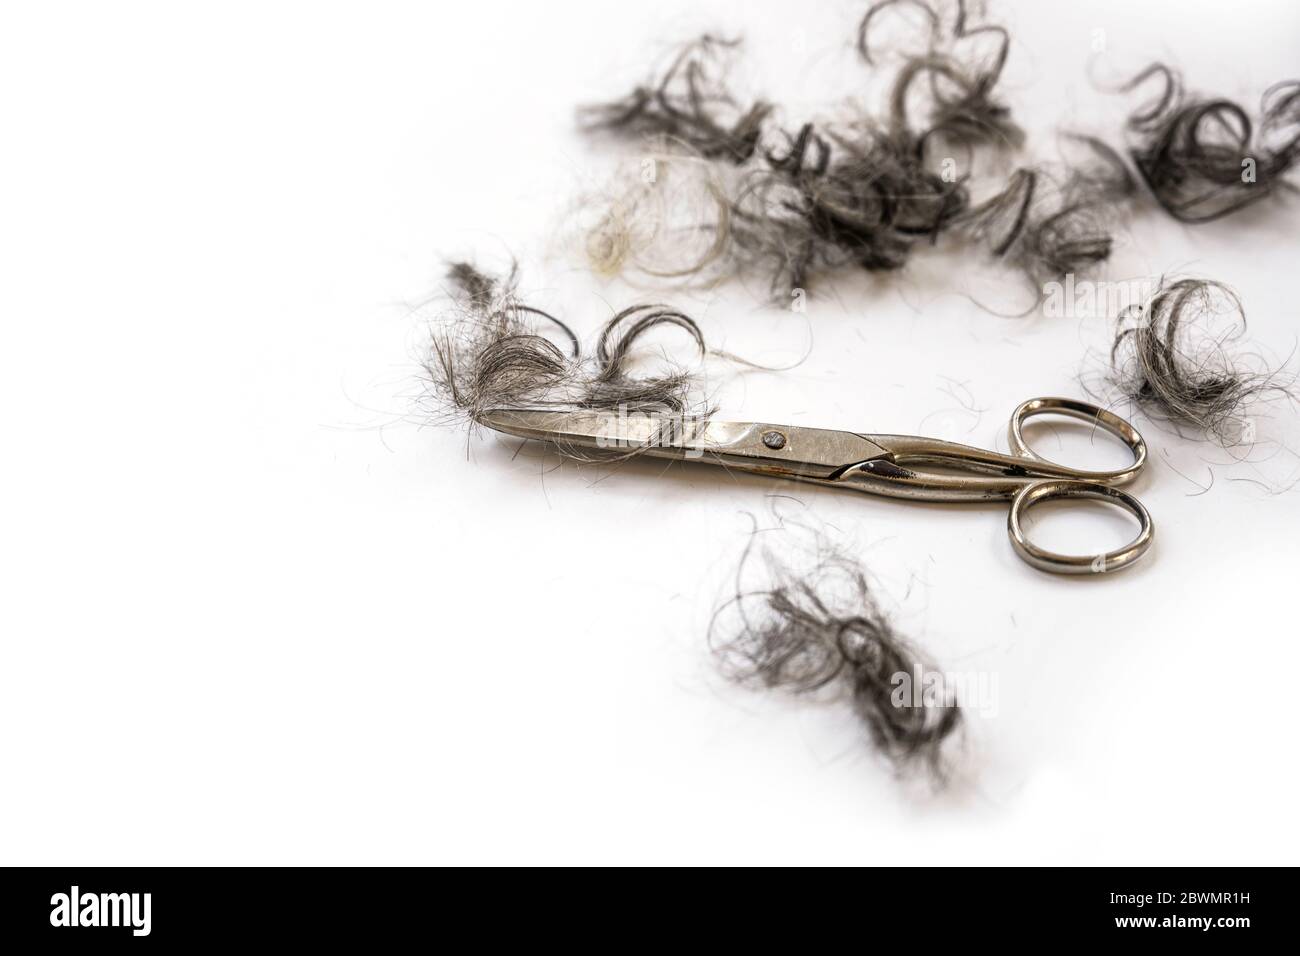 Les cheveux faits maison coupés, parce que les coiffeurs sont fermés en raison de coronavirus verrouillage, ciseaux et touffes de boucles sur un fond blanc, espace de copie, sel Banque D'Images